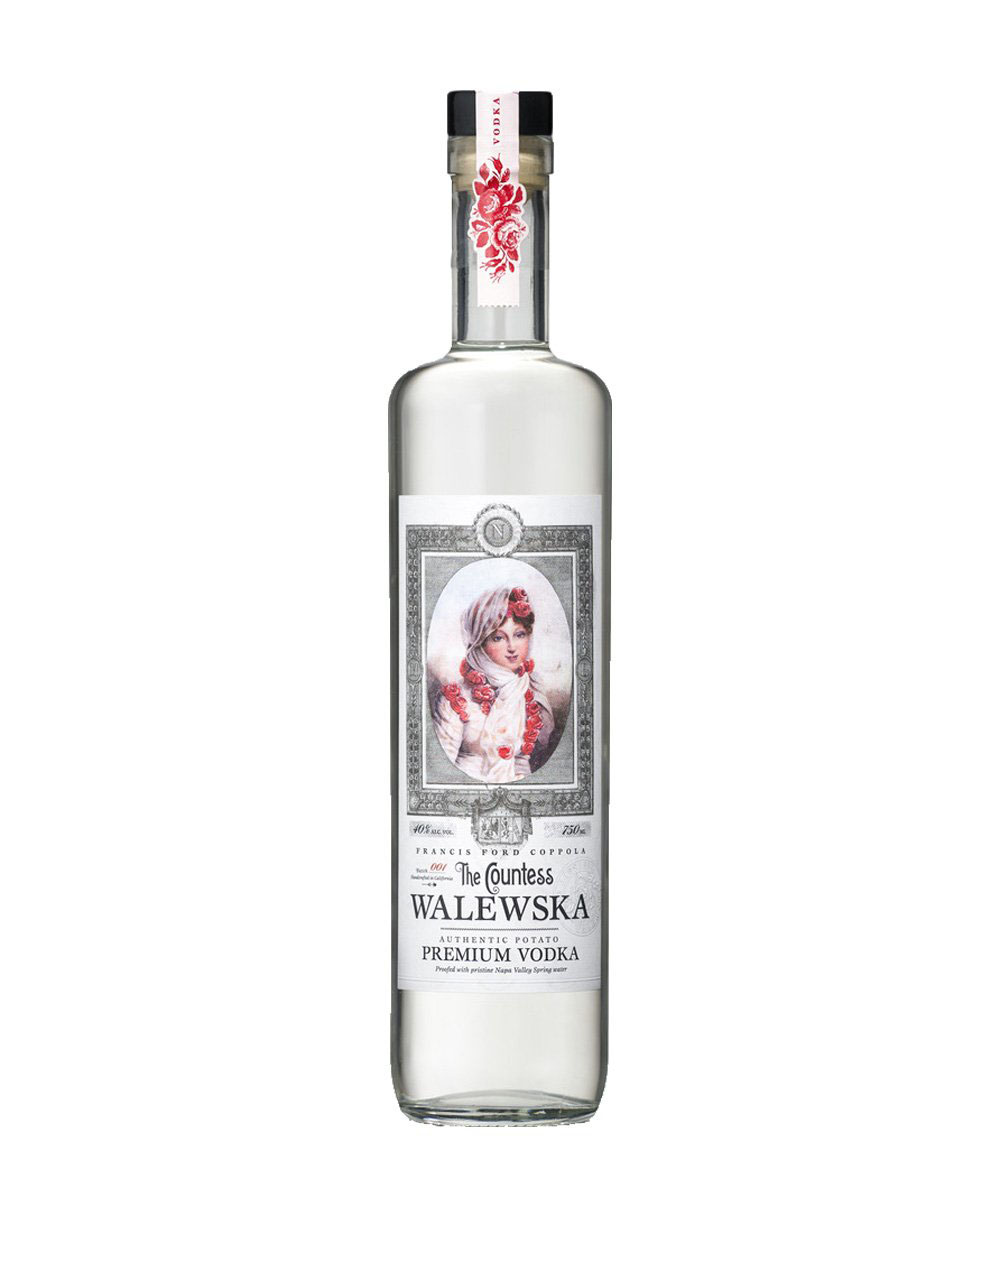 The Countess Waleweska Vodka